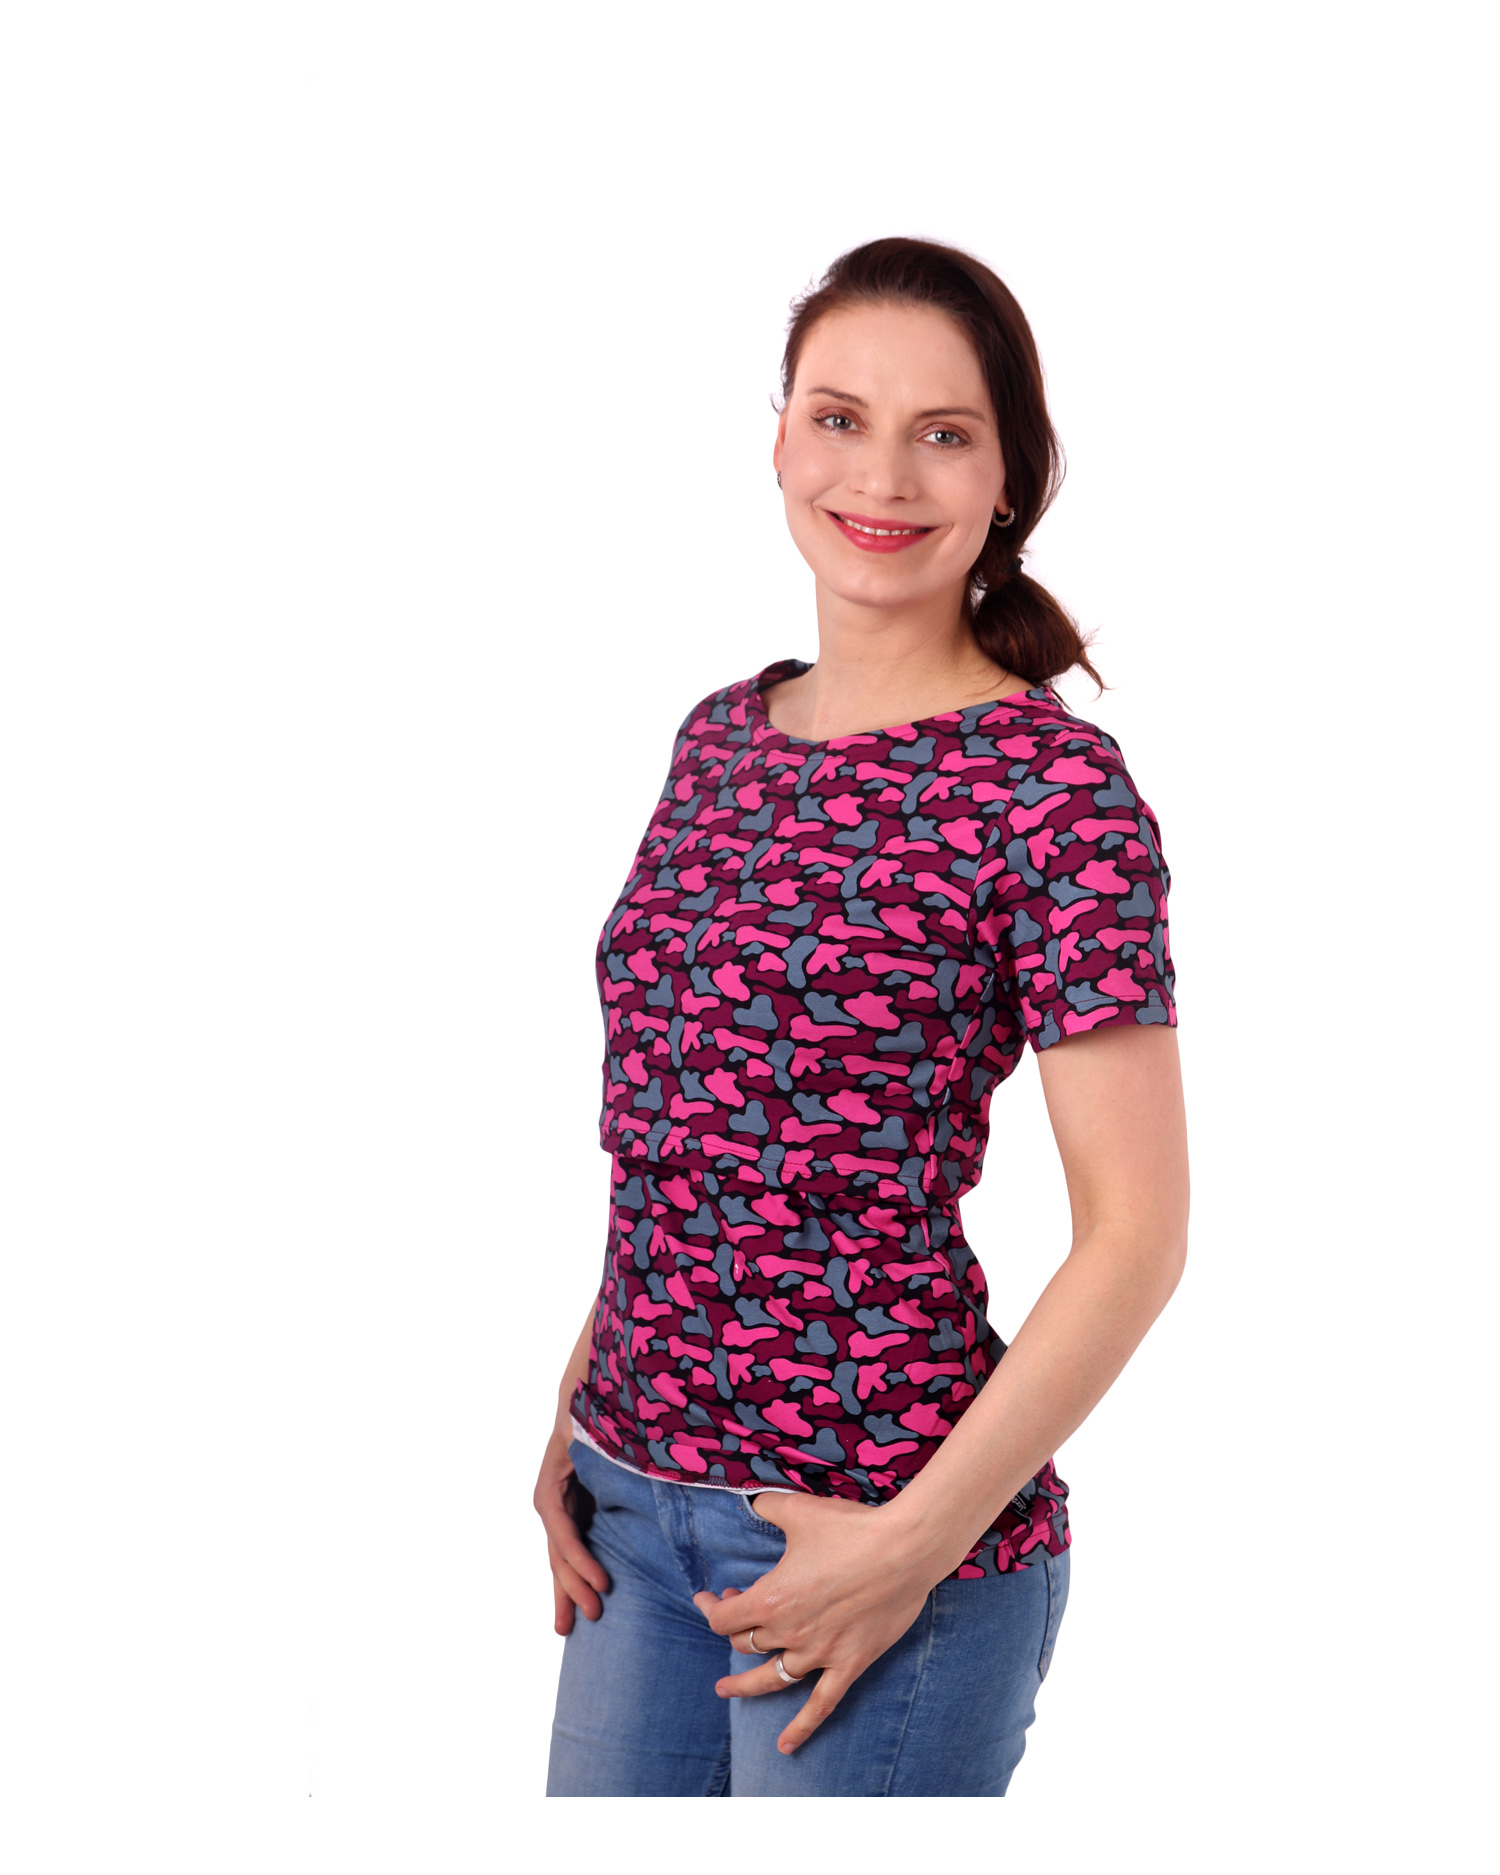 2. JAKOST Kojicí tričko Lenka, krátký rukáv, fleky růžové na černé, L/XL